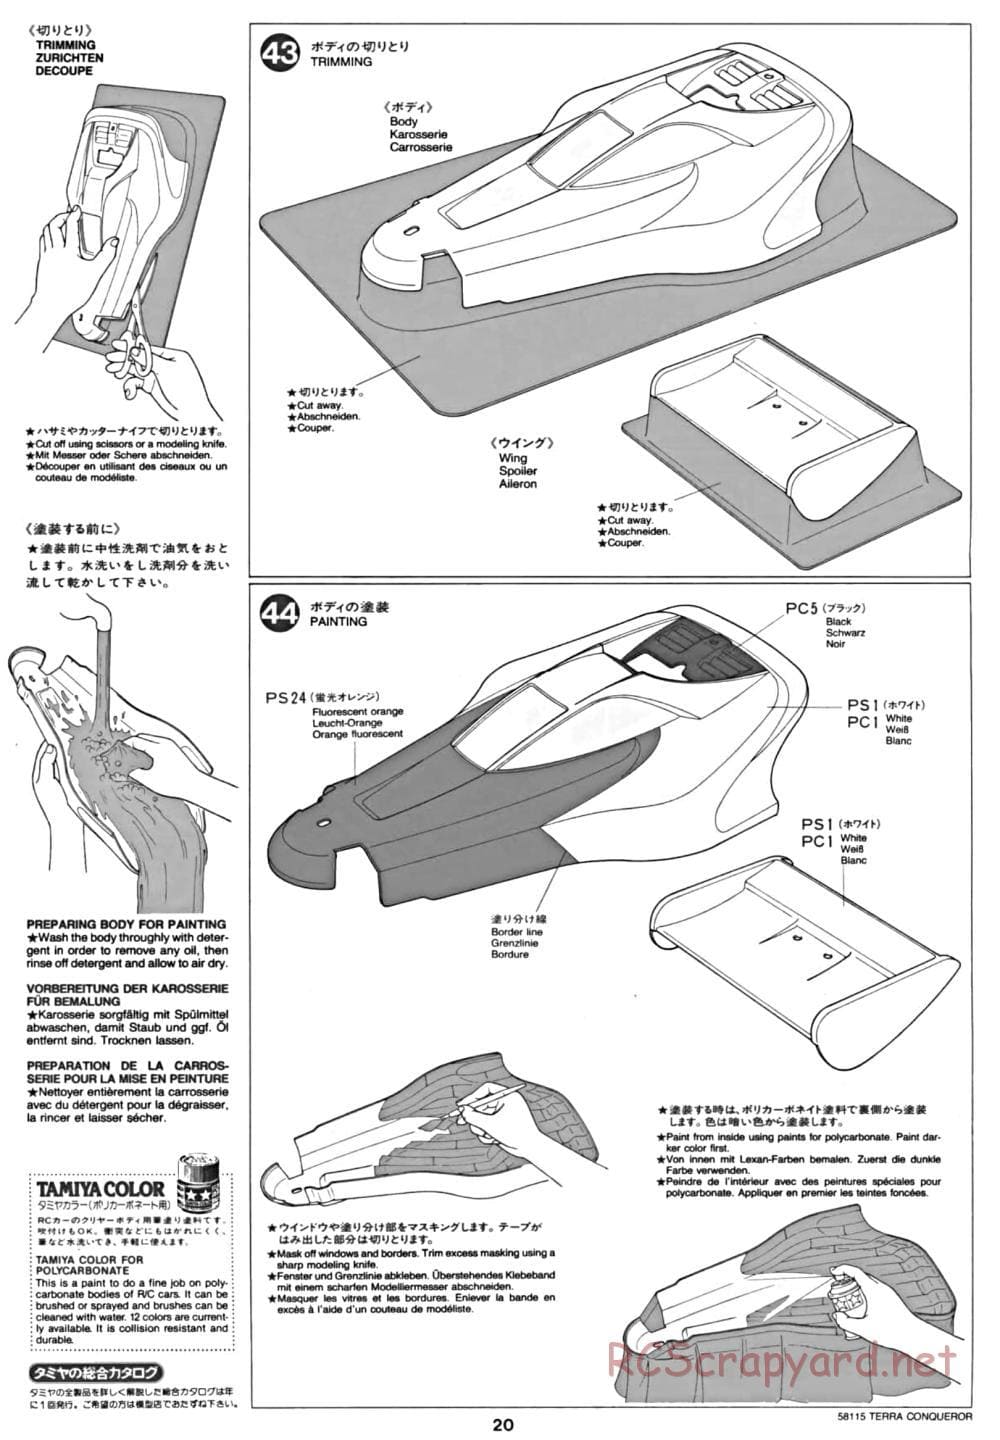 Tamiya - Terra Conqueror Chassis - Manual - Page 20